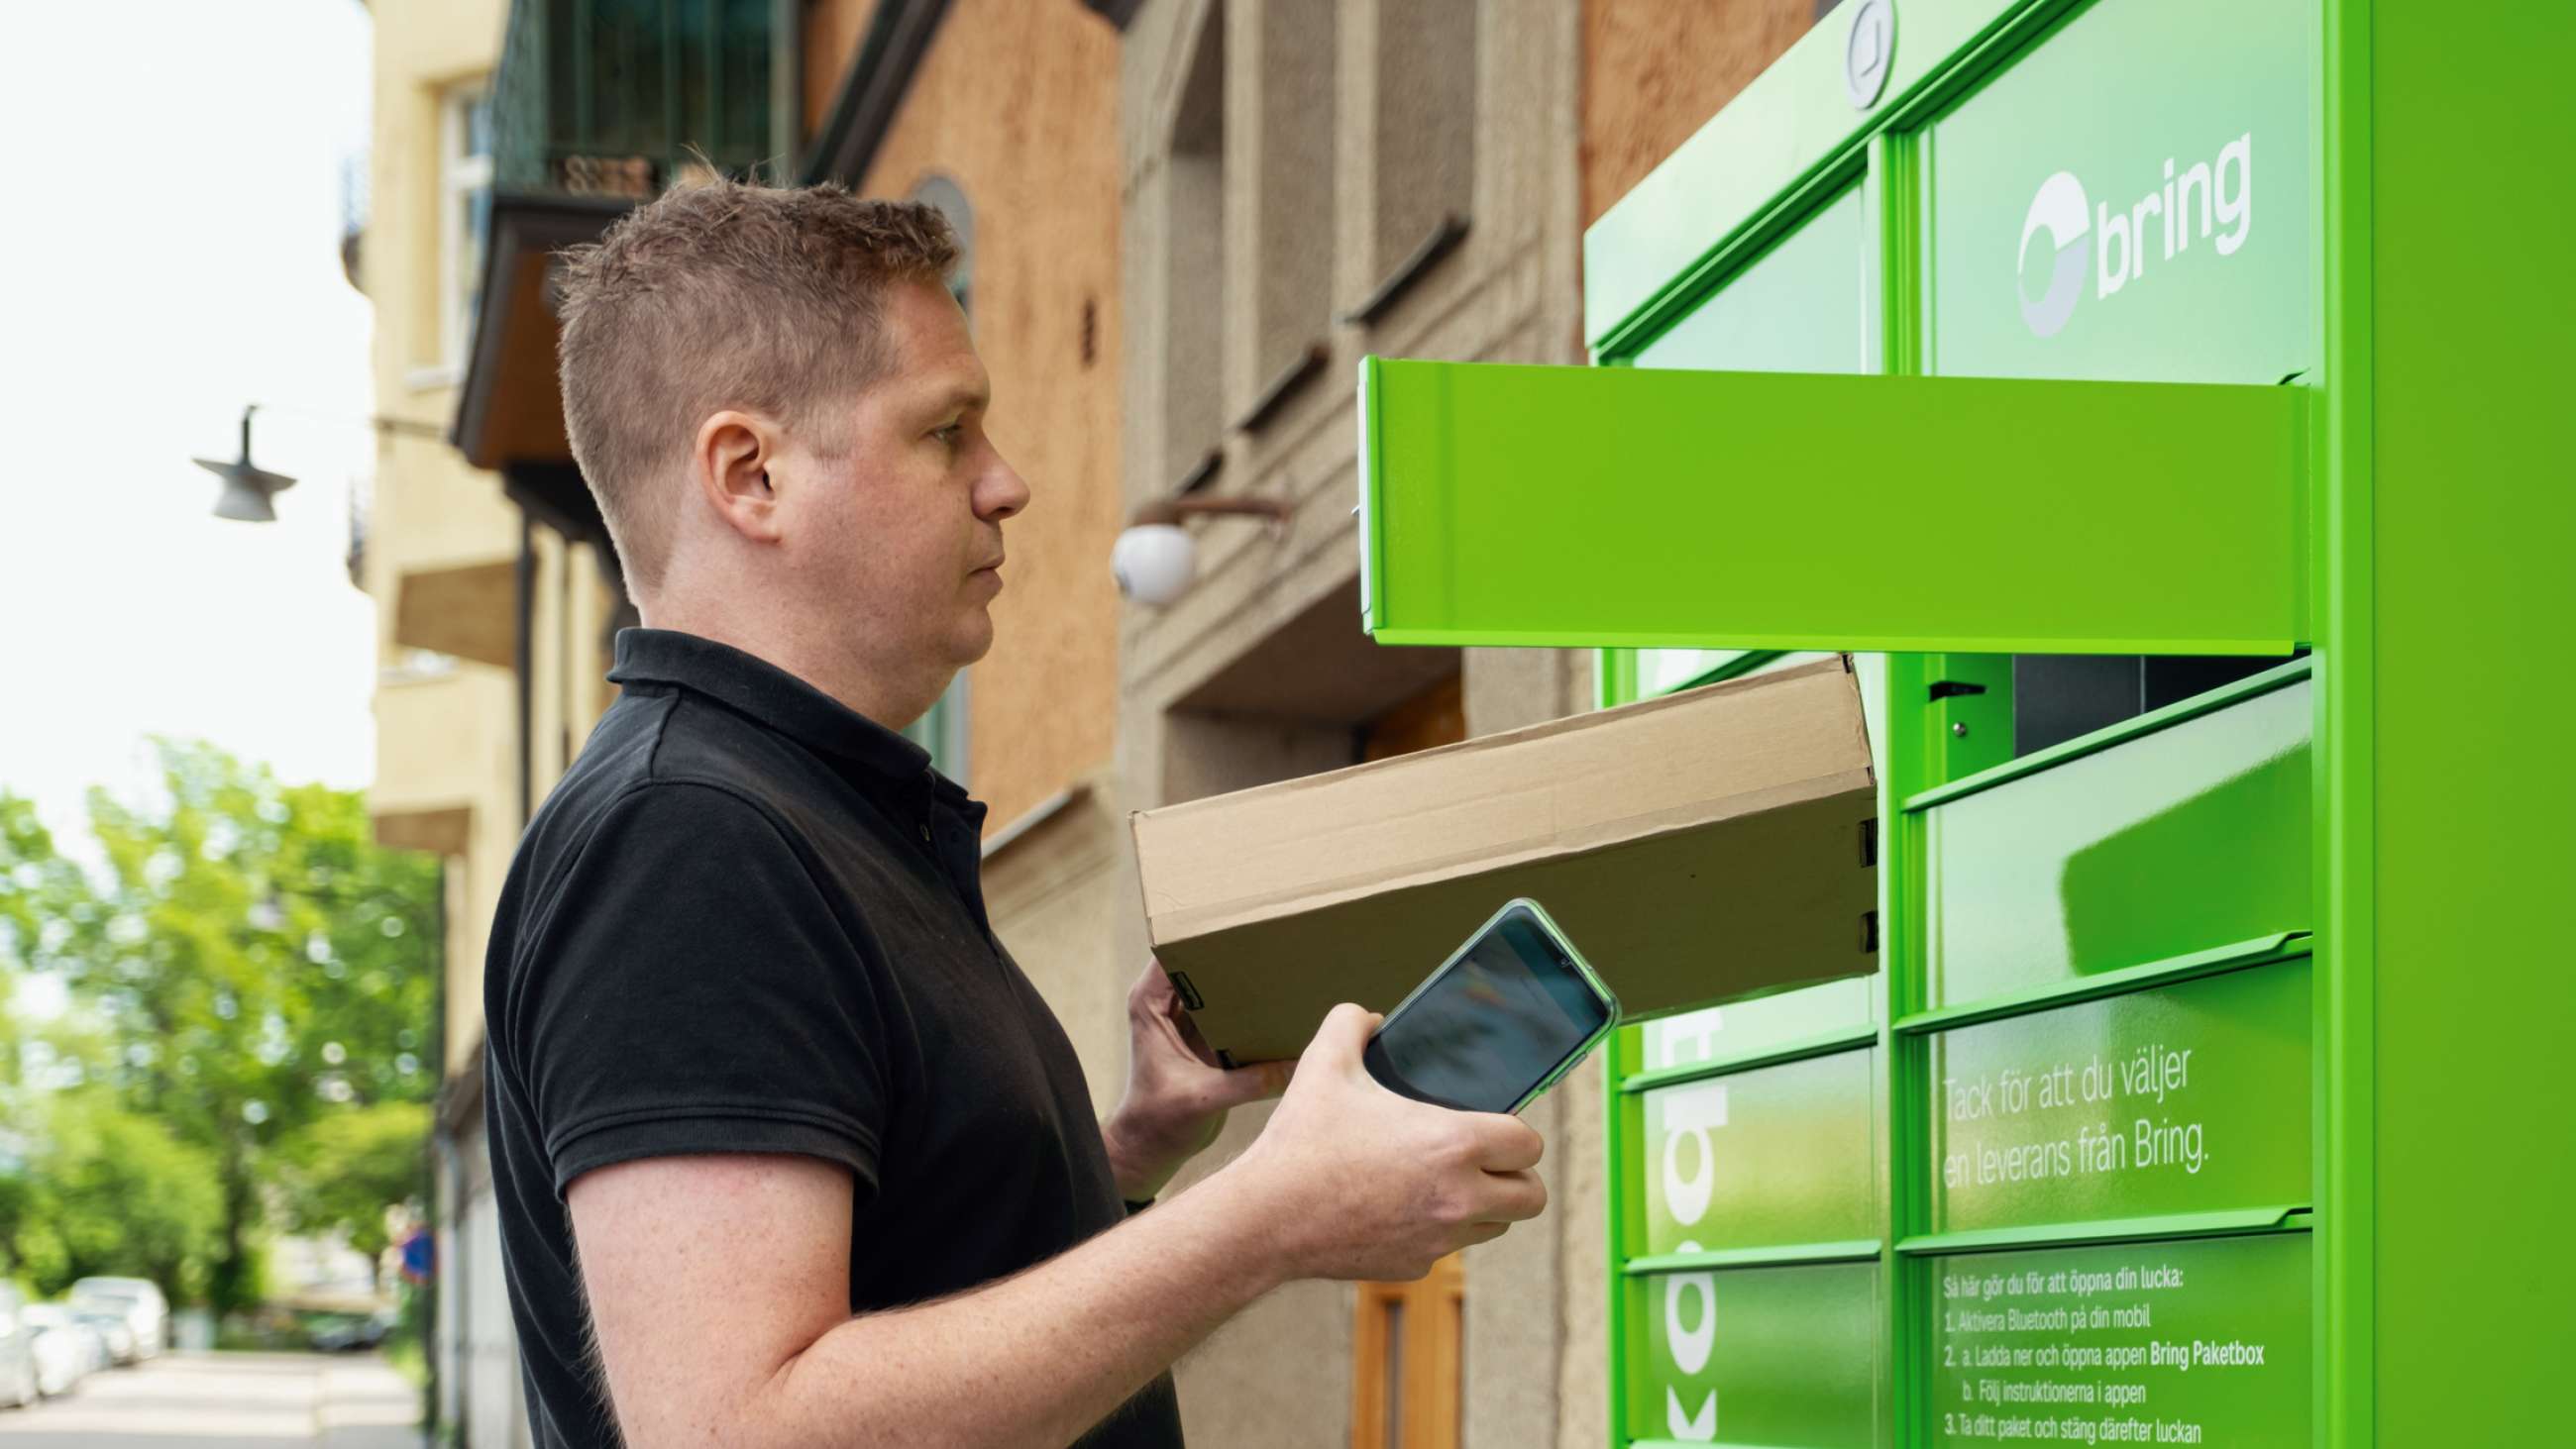 En man står med en mobil i handen framför en grön Bring paketbox och lämnar ett paket för retur i en lucka i boxen